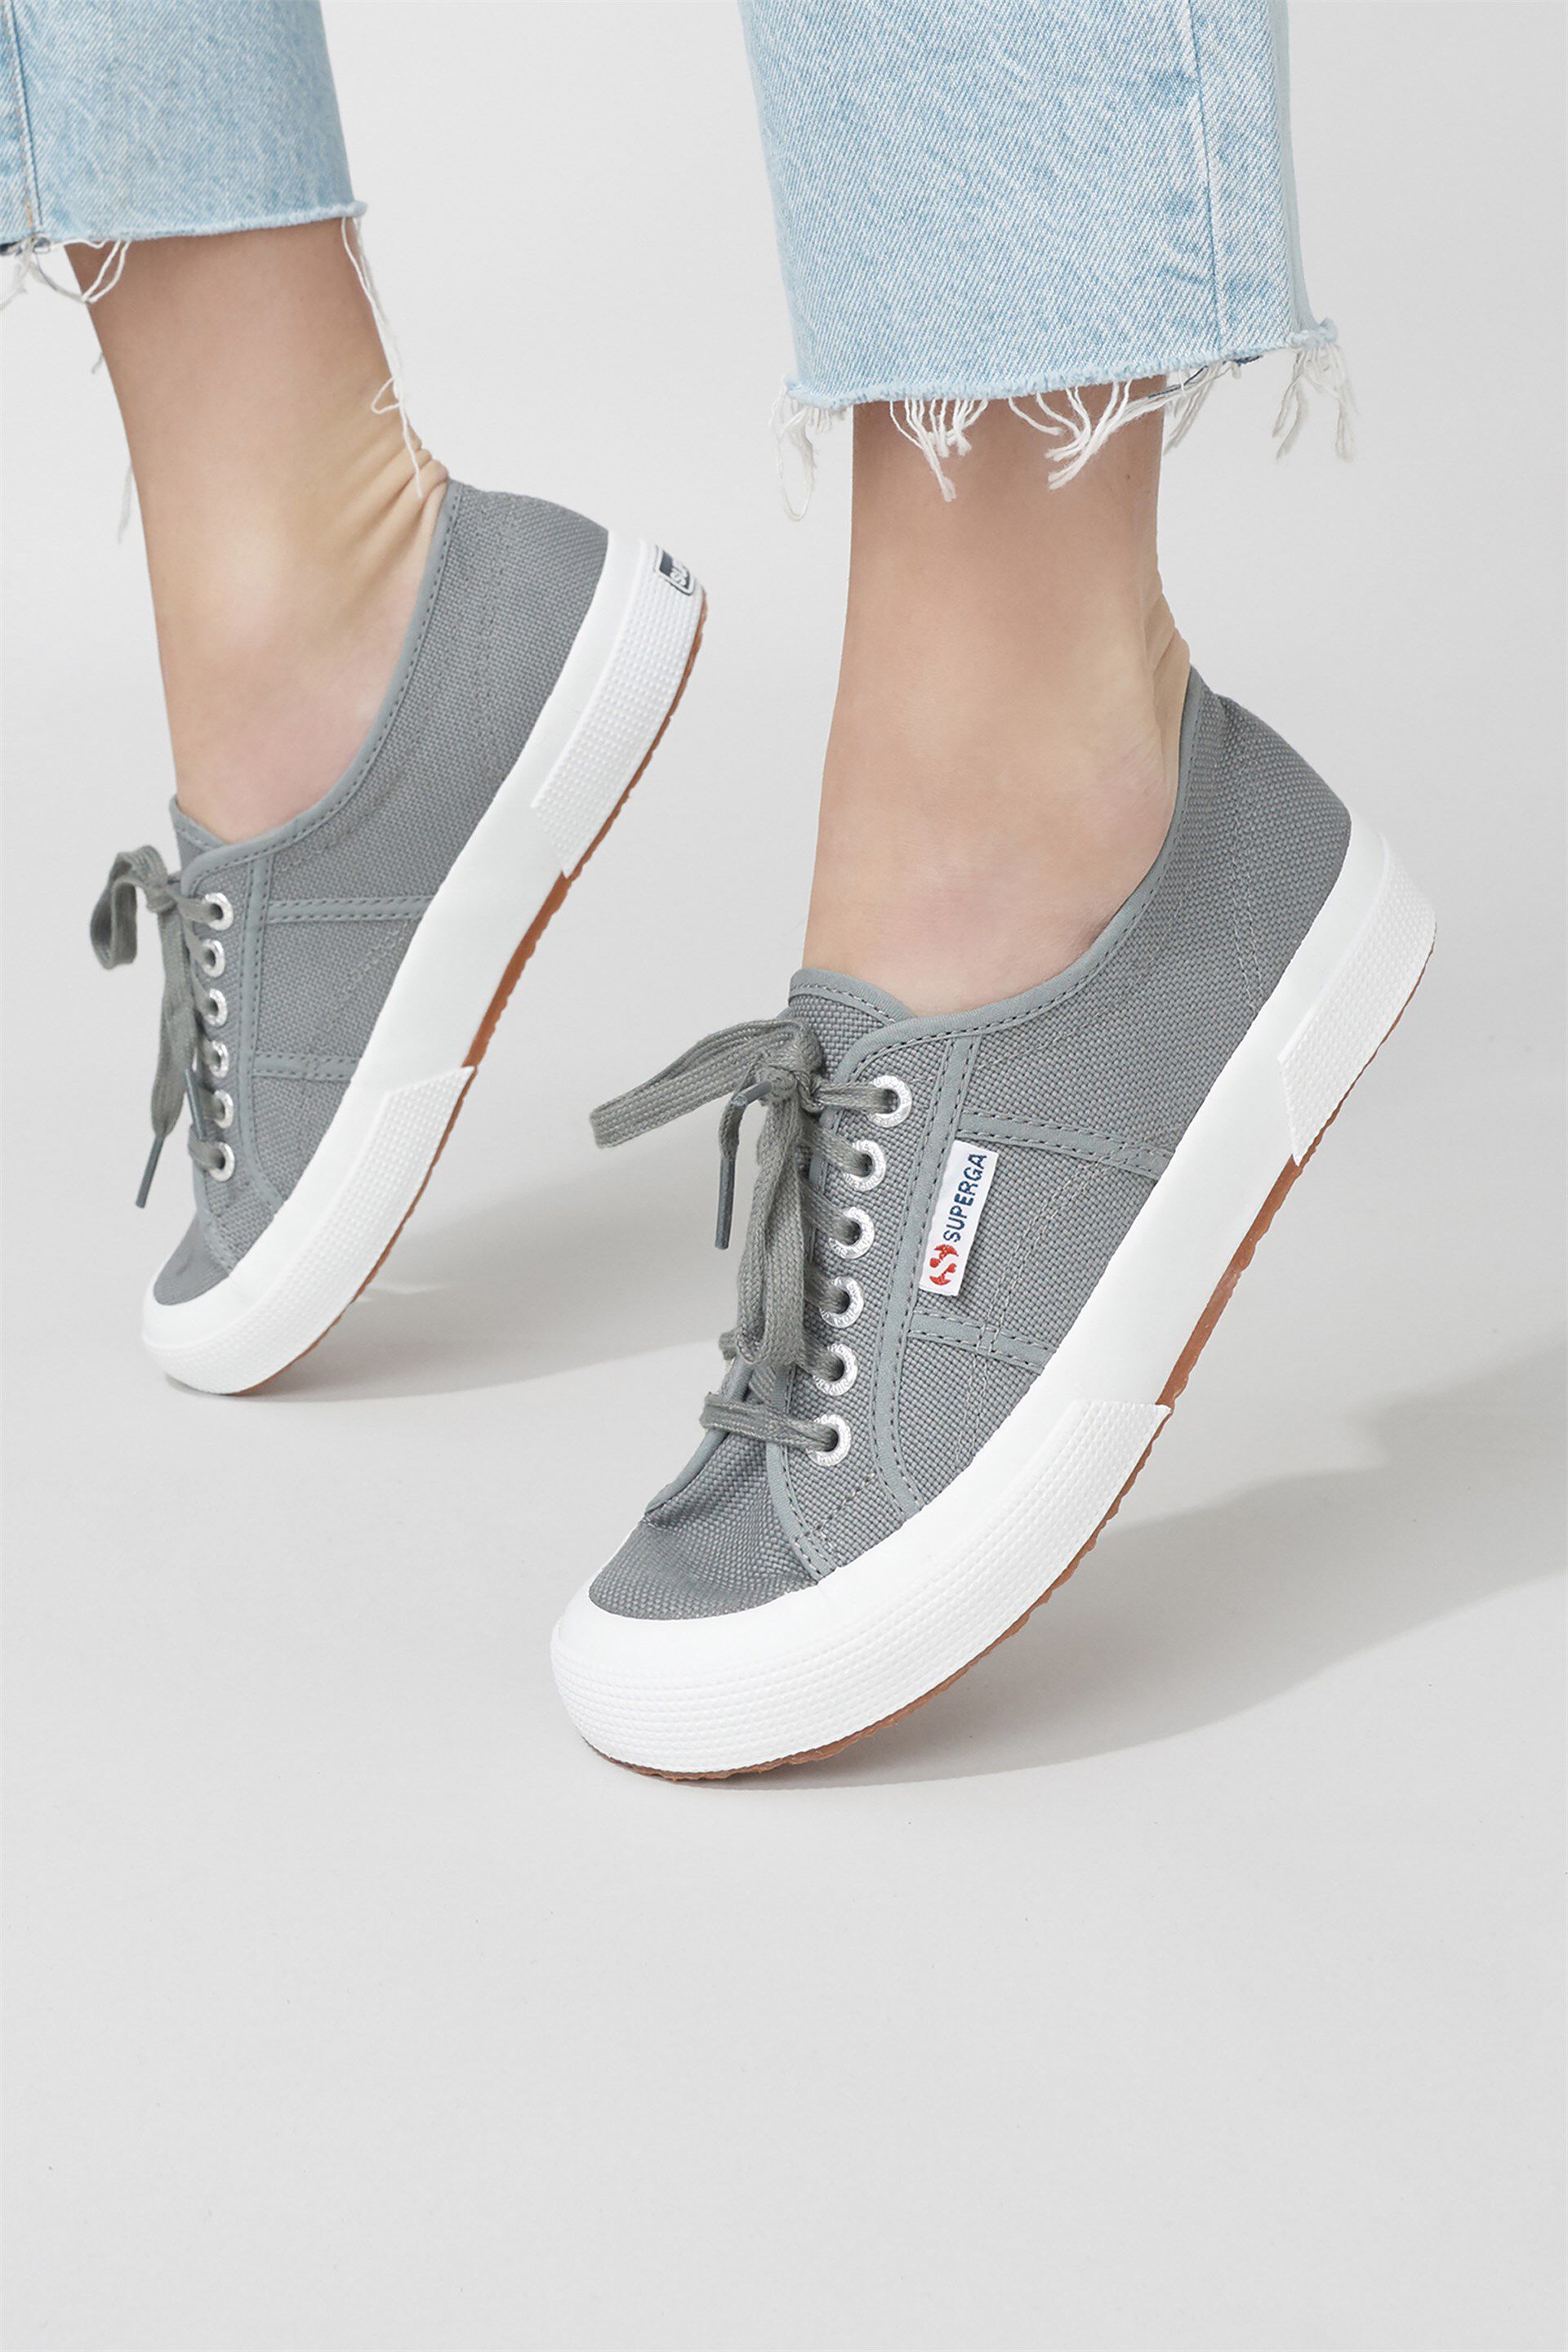 superga gray sneakers